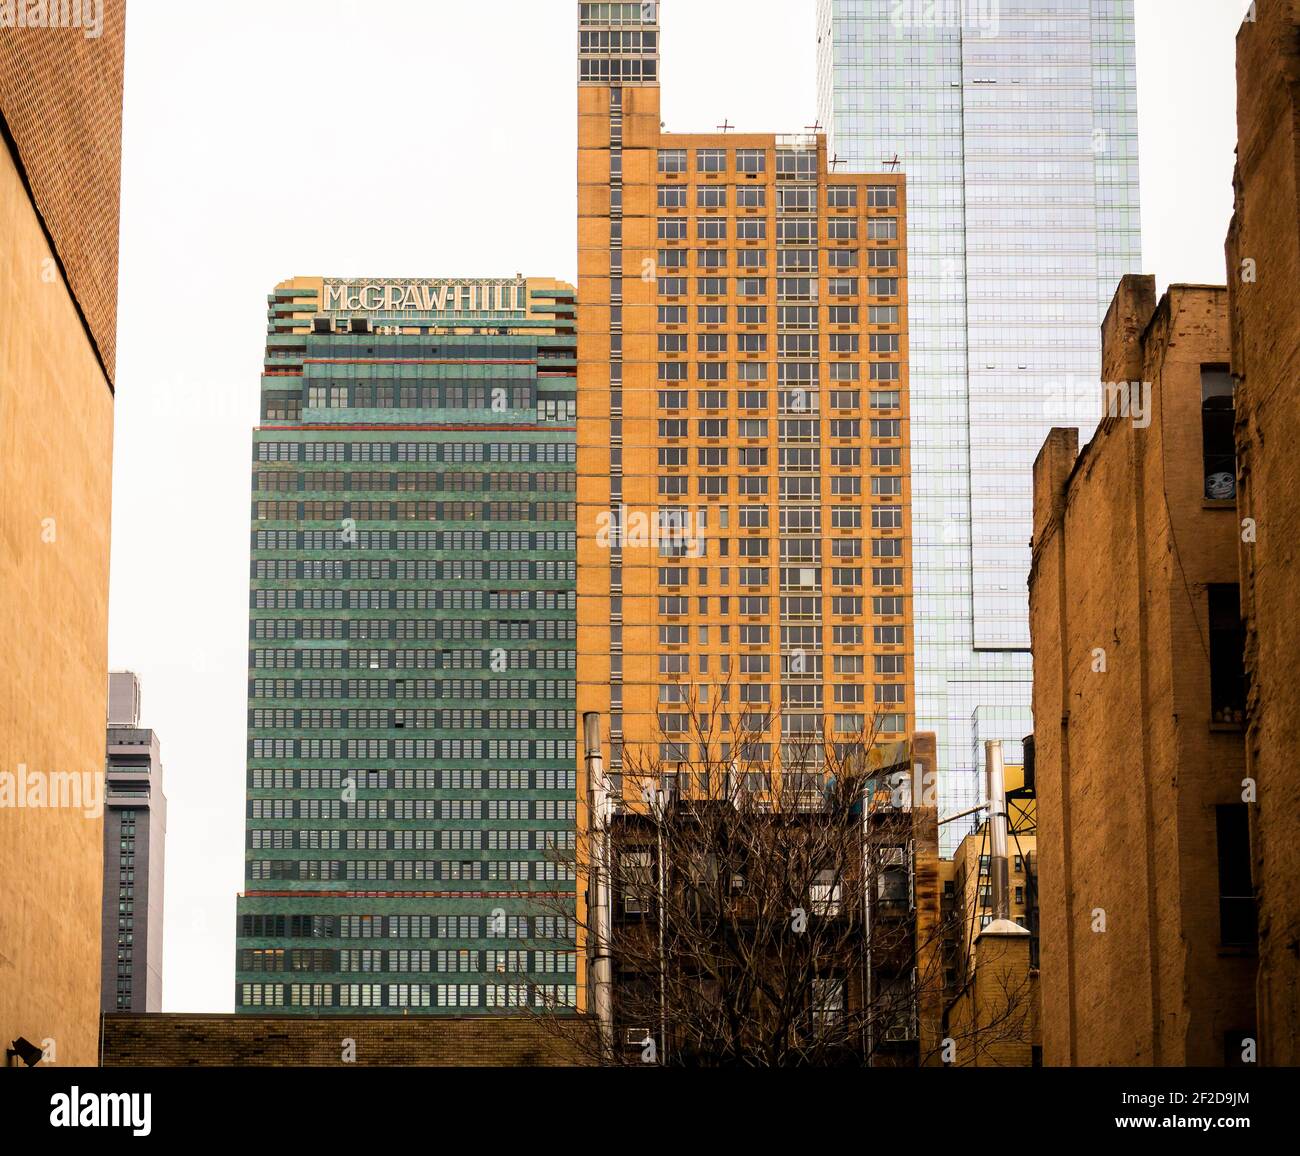 Das McGraw-Hill Building, links, in Midtown Manhattan in New York am Samstag, 27. Februar 2021. Der Art-Deco-Wolkenkratzer wurde 1930-31 erbaut und von Raymond Hood entworfen, der übrigens das News Building am östlichen Ende der Straße 42nd entworfen hat und damit die Straße gebucht hat. (© Richard B. Levine) Stockfoto